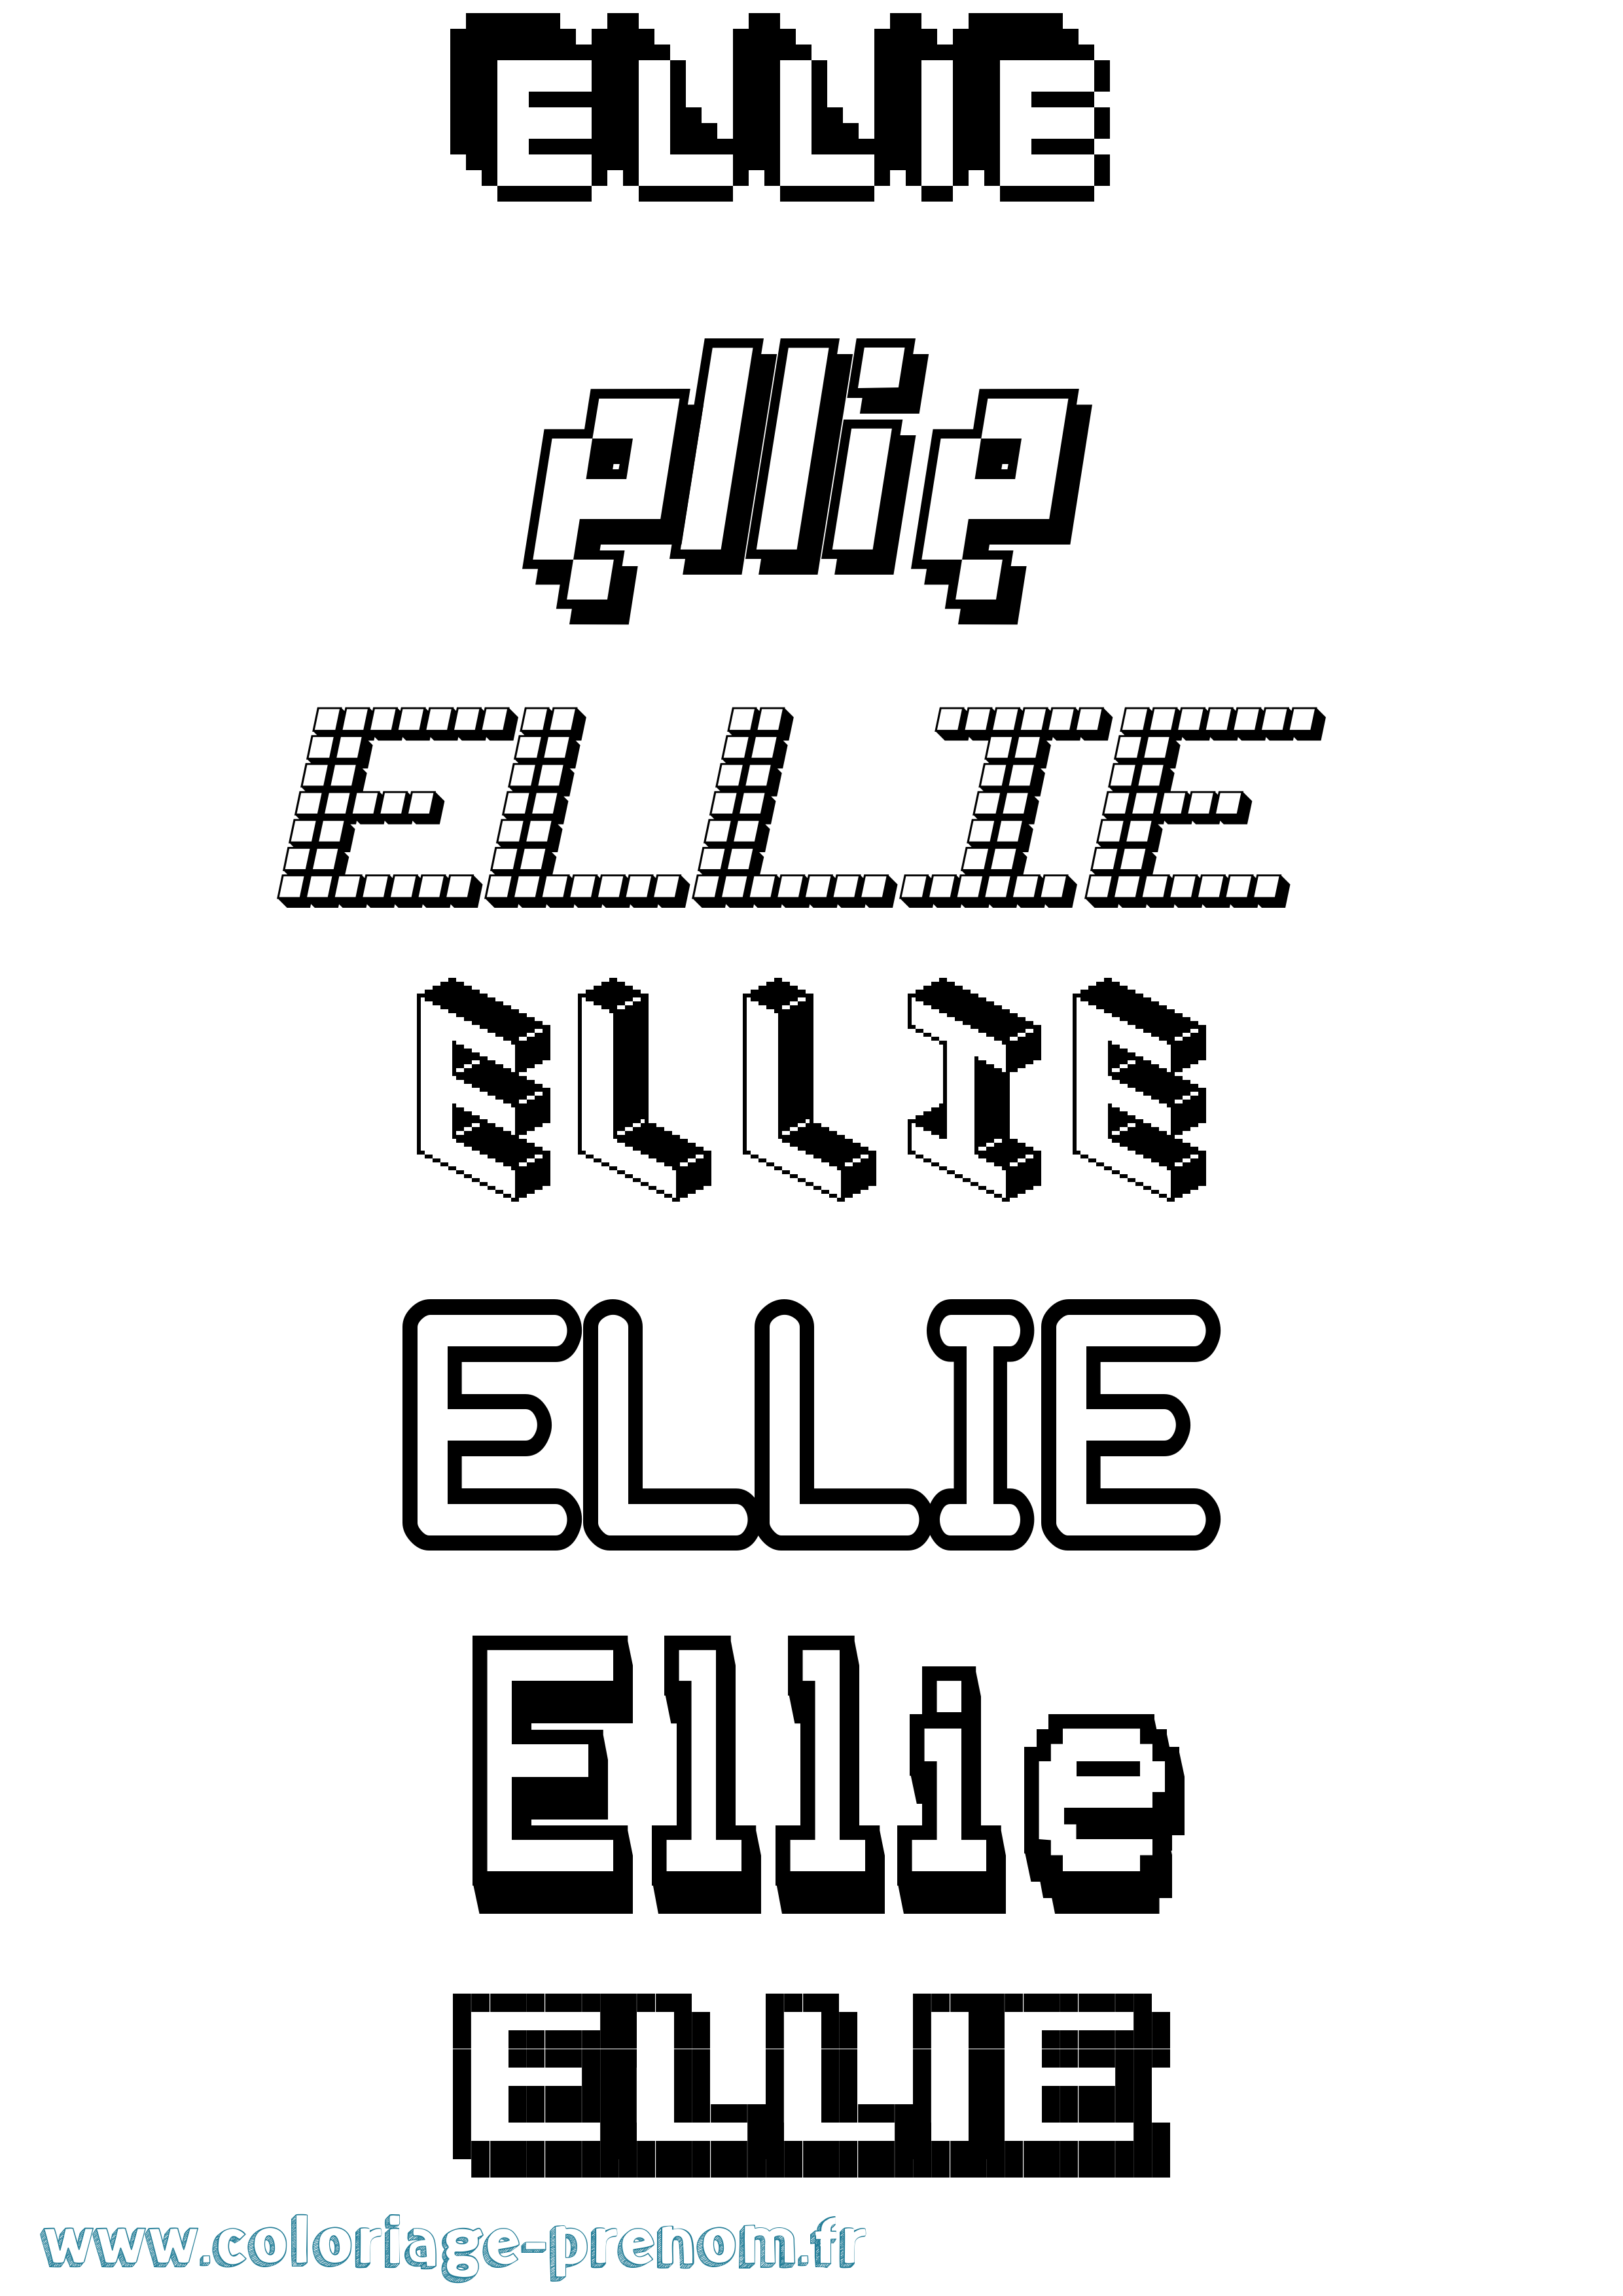 Coloriage prénom Ellie Pixel